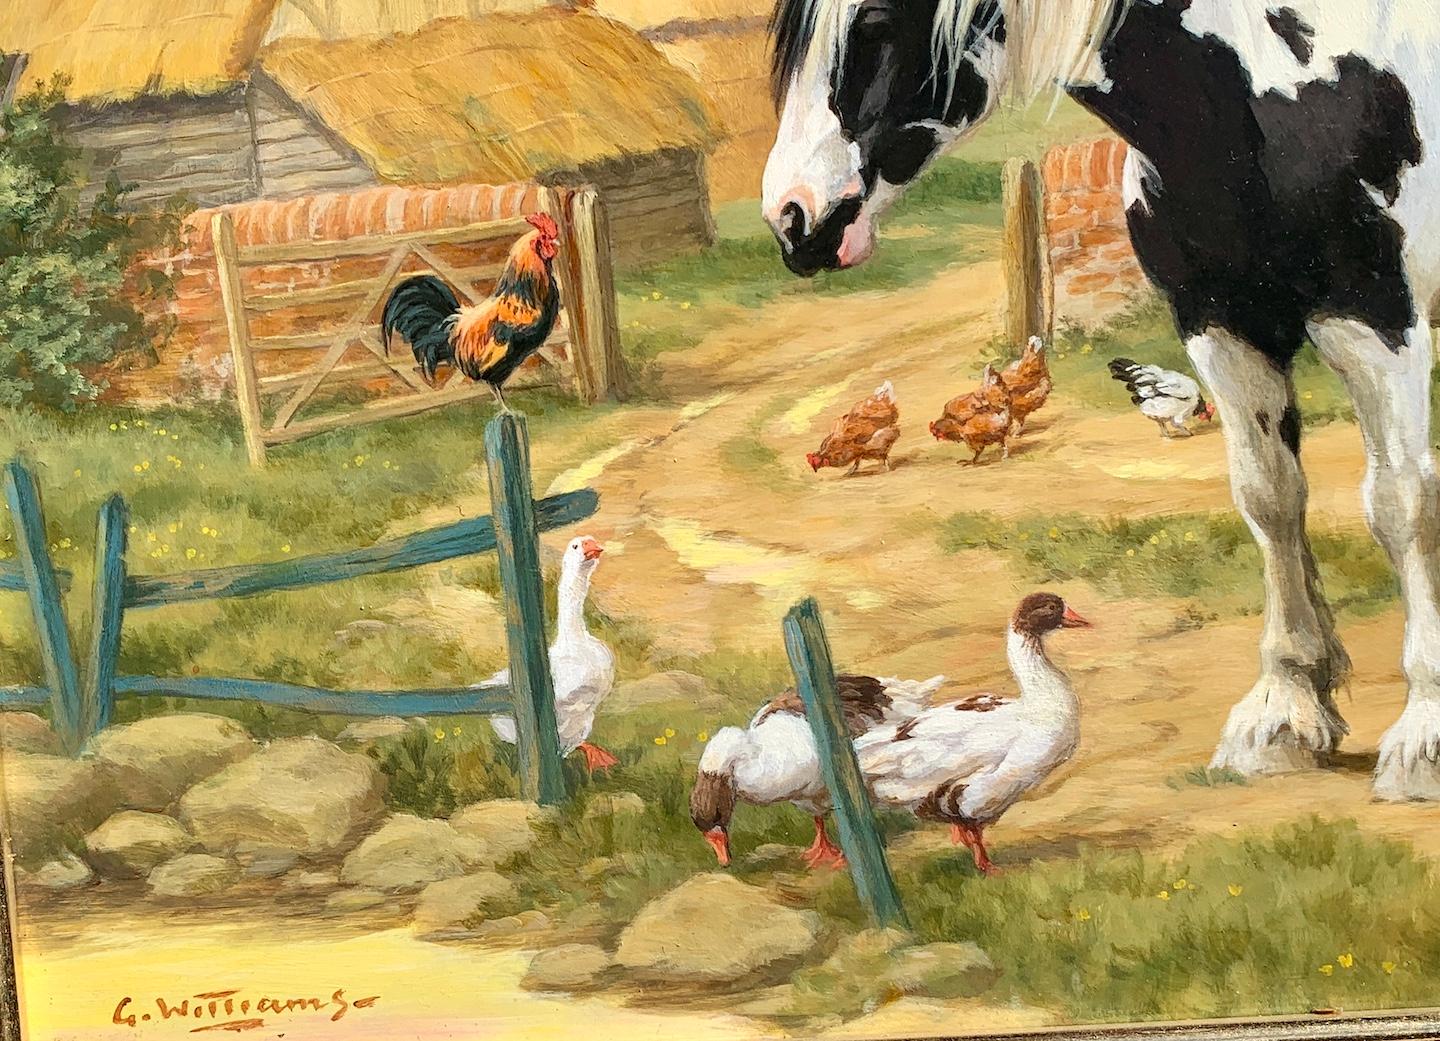 Scène de ferme anglaise avec un cheval de ferme, des poulets, des canards et un chalet perché - Réalisme Painting par Glynn Williams